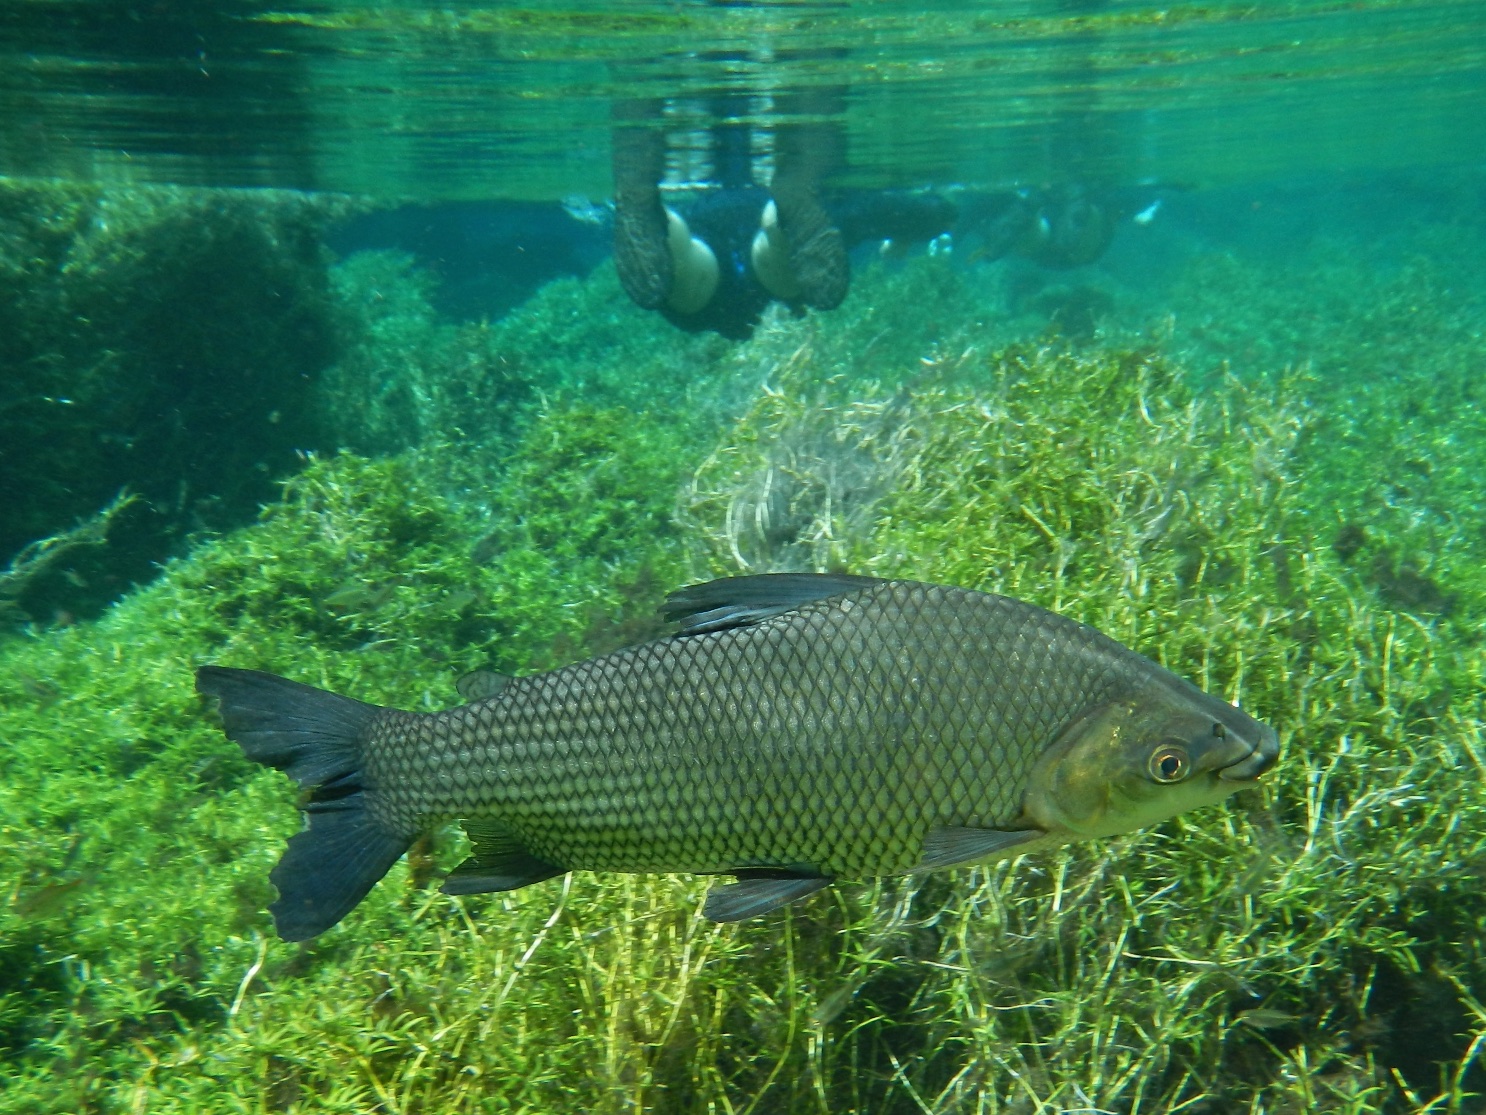  Fish, Prata, near Bonito, Brazil 